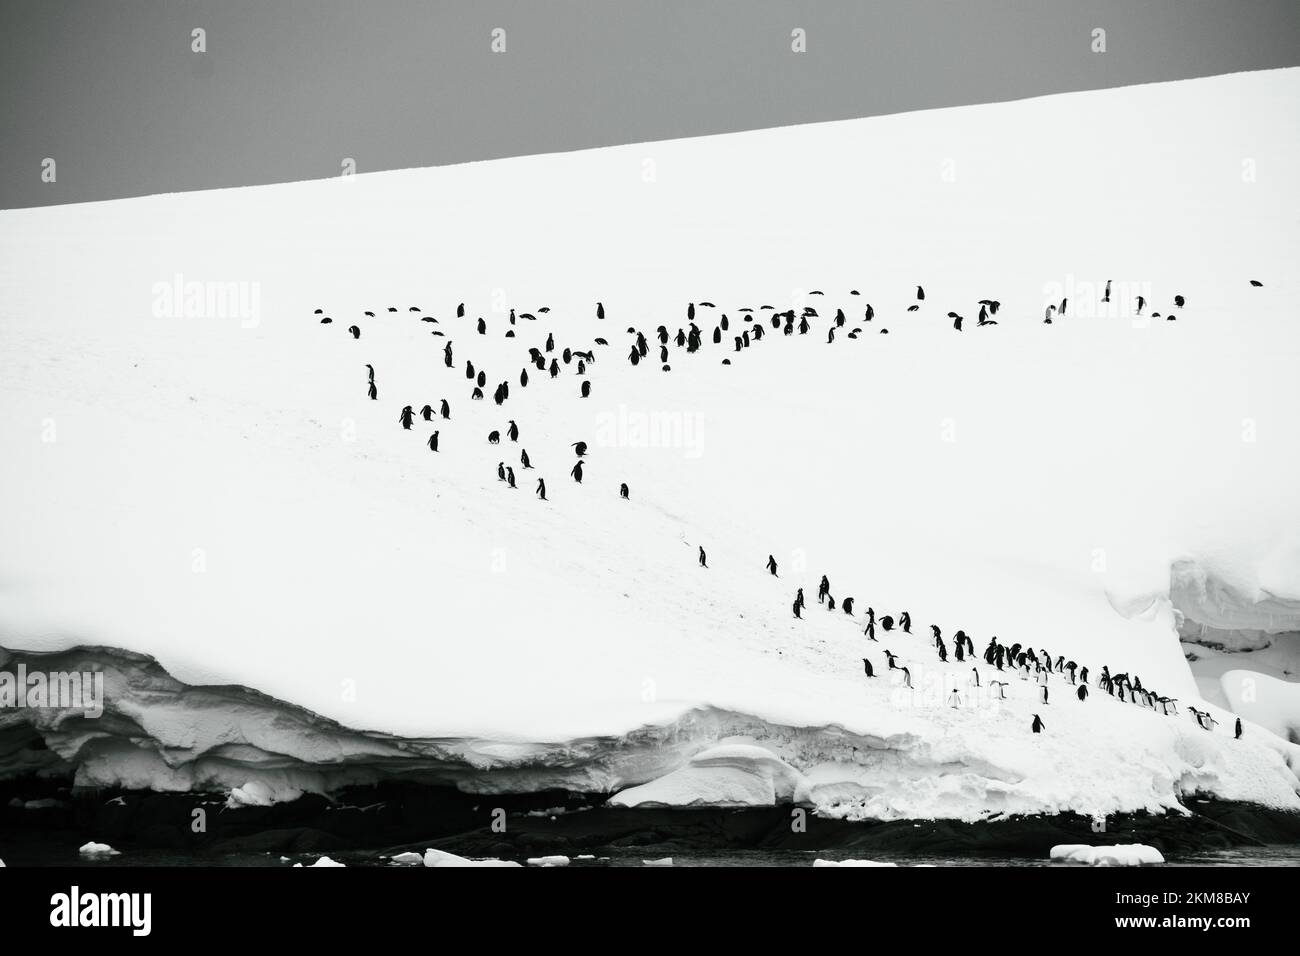 Una colonia de pingüinos Gentoo se extiende a lo largo de la isla cubierta de nieve. Foto de stock